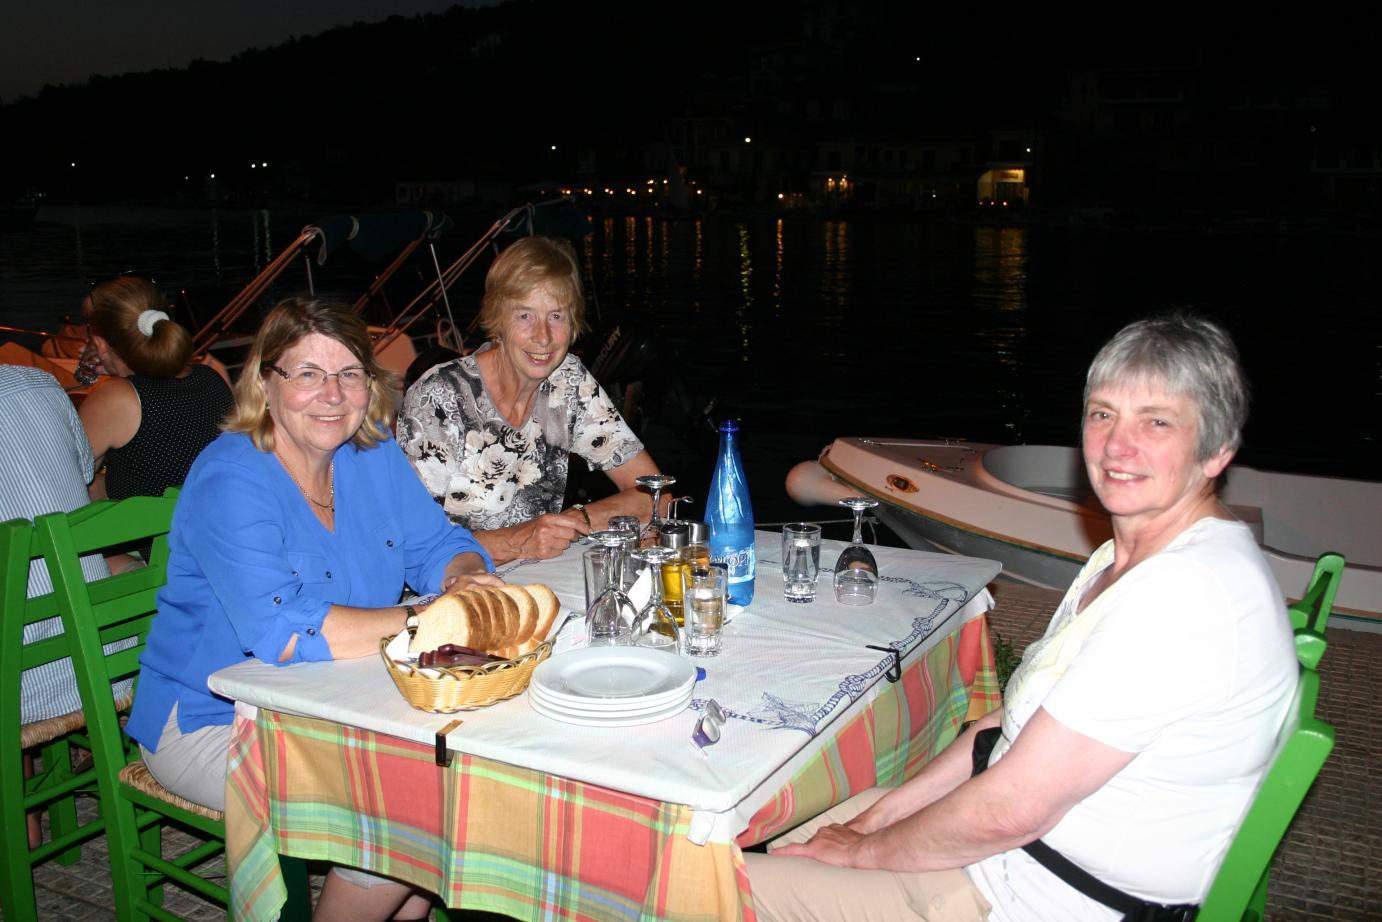 Thursday 17th September, evening meal at Vathi, Meganisi.